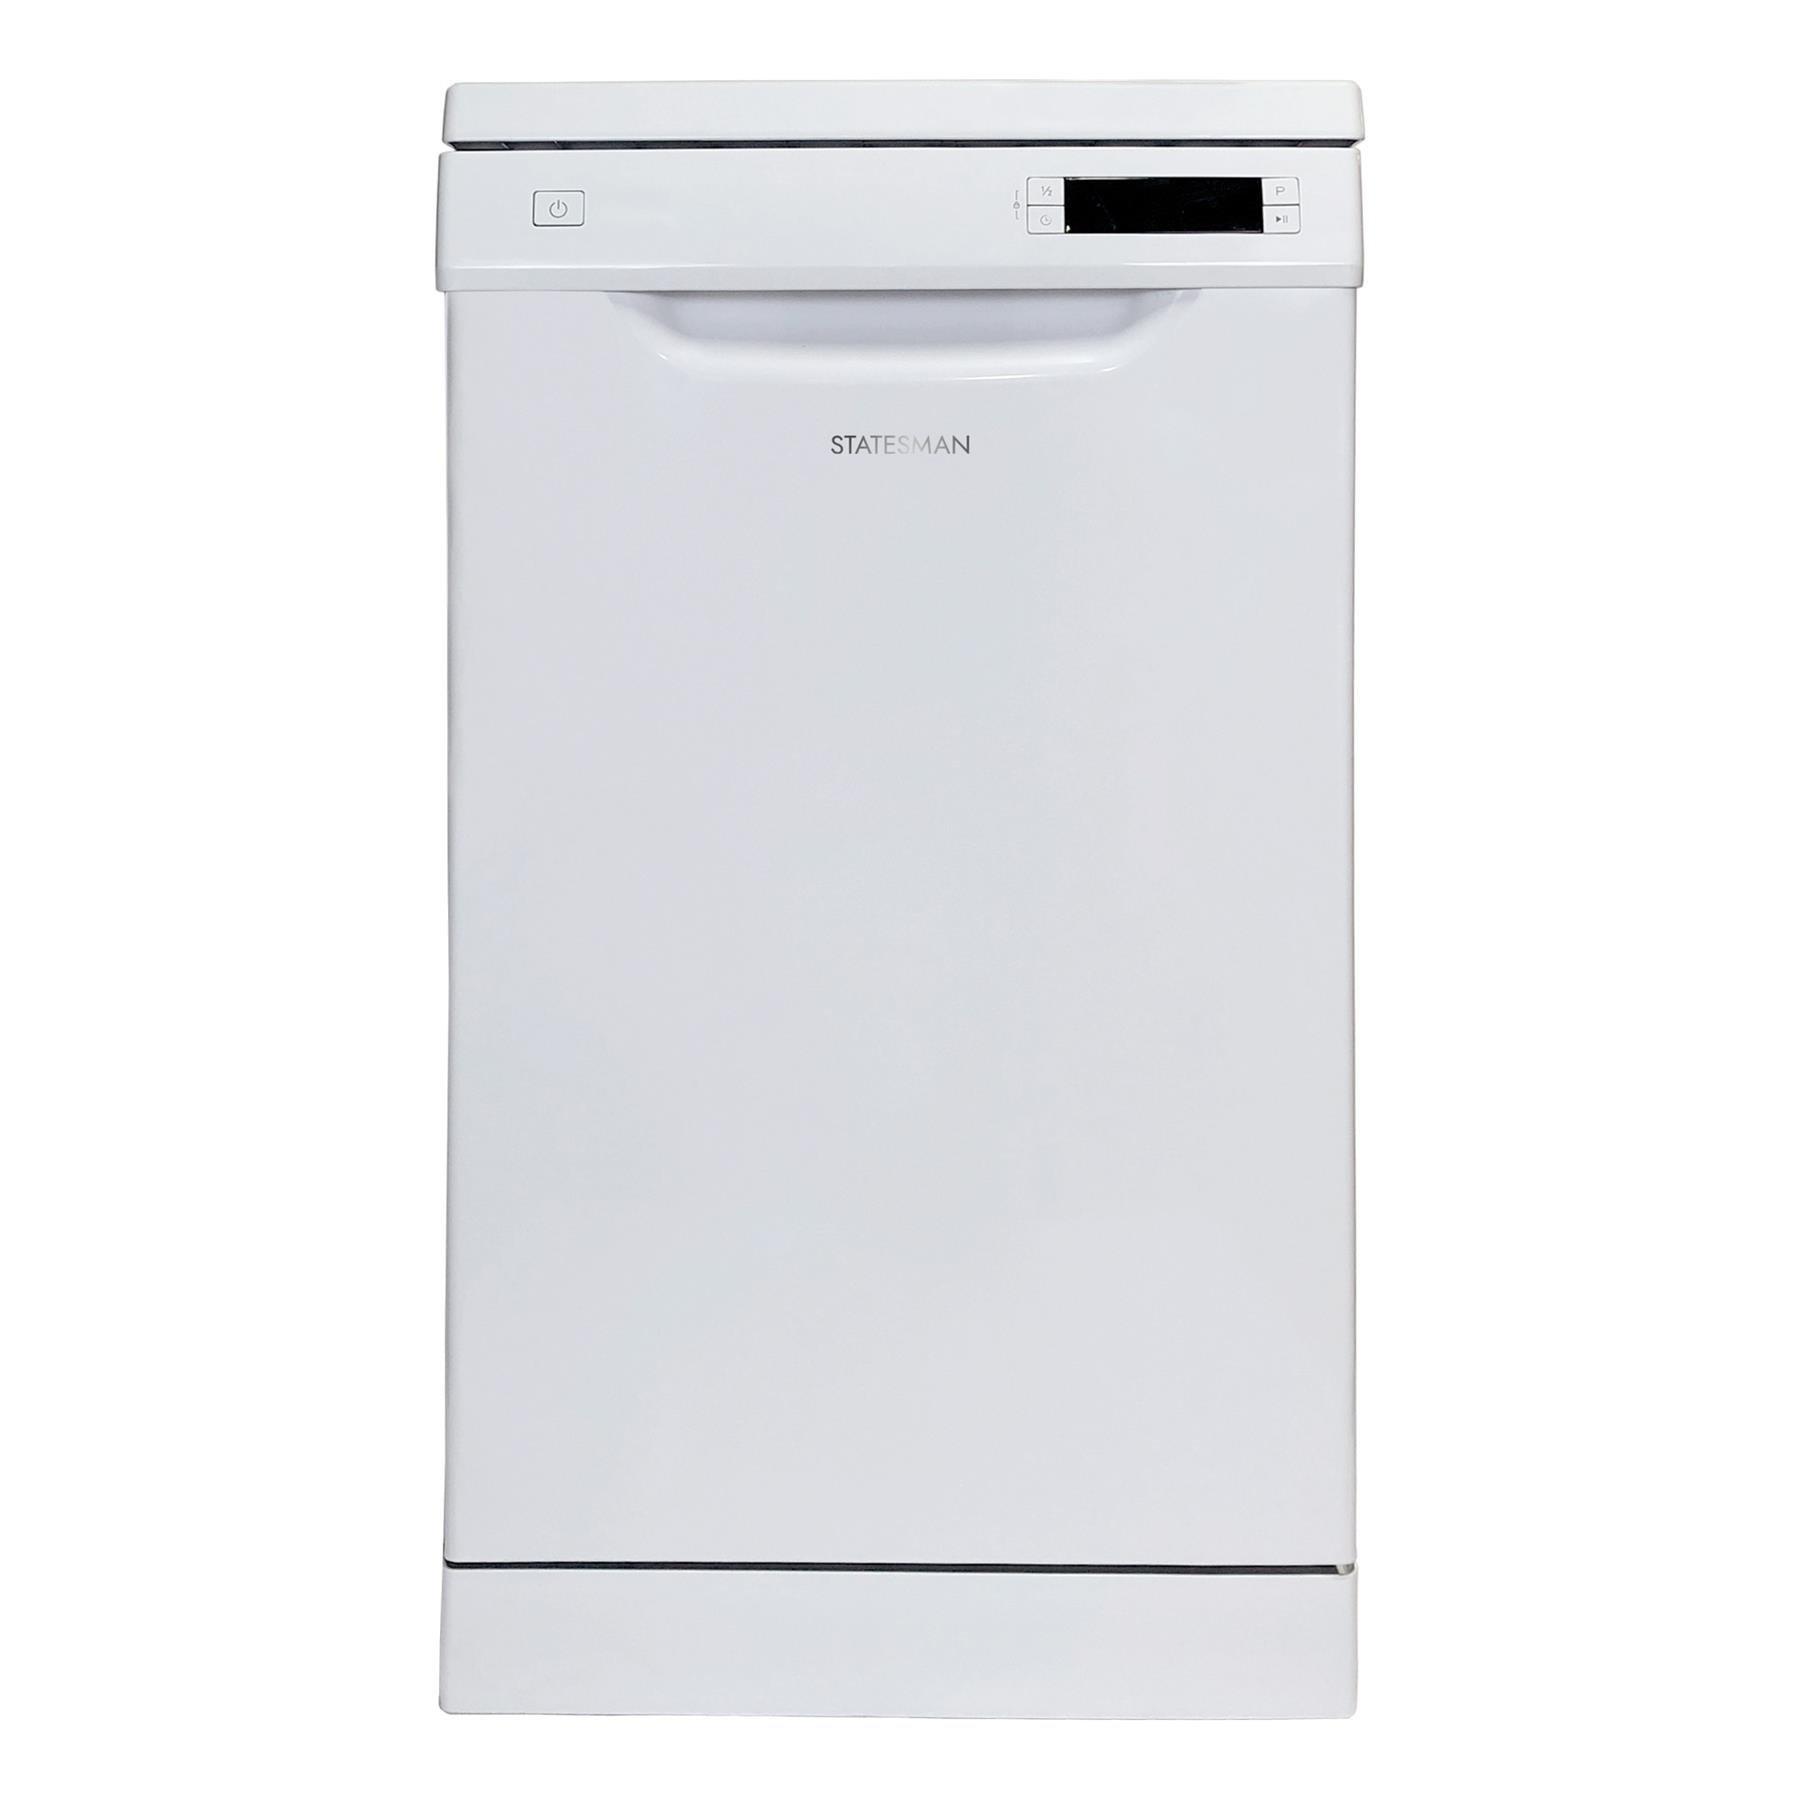 Freestanding Slimline 10 Place Full Size Dishwasher